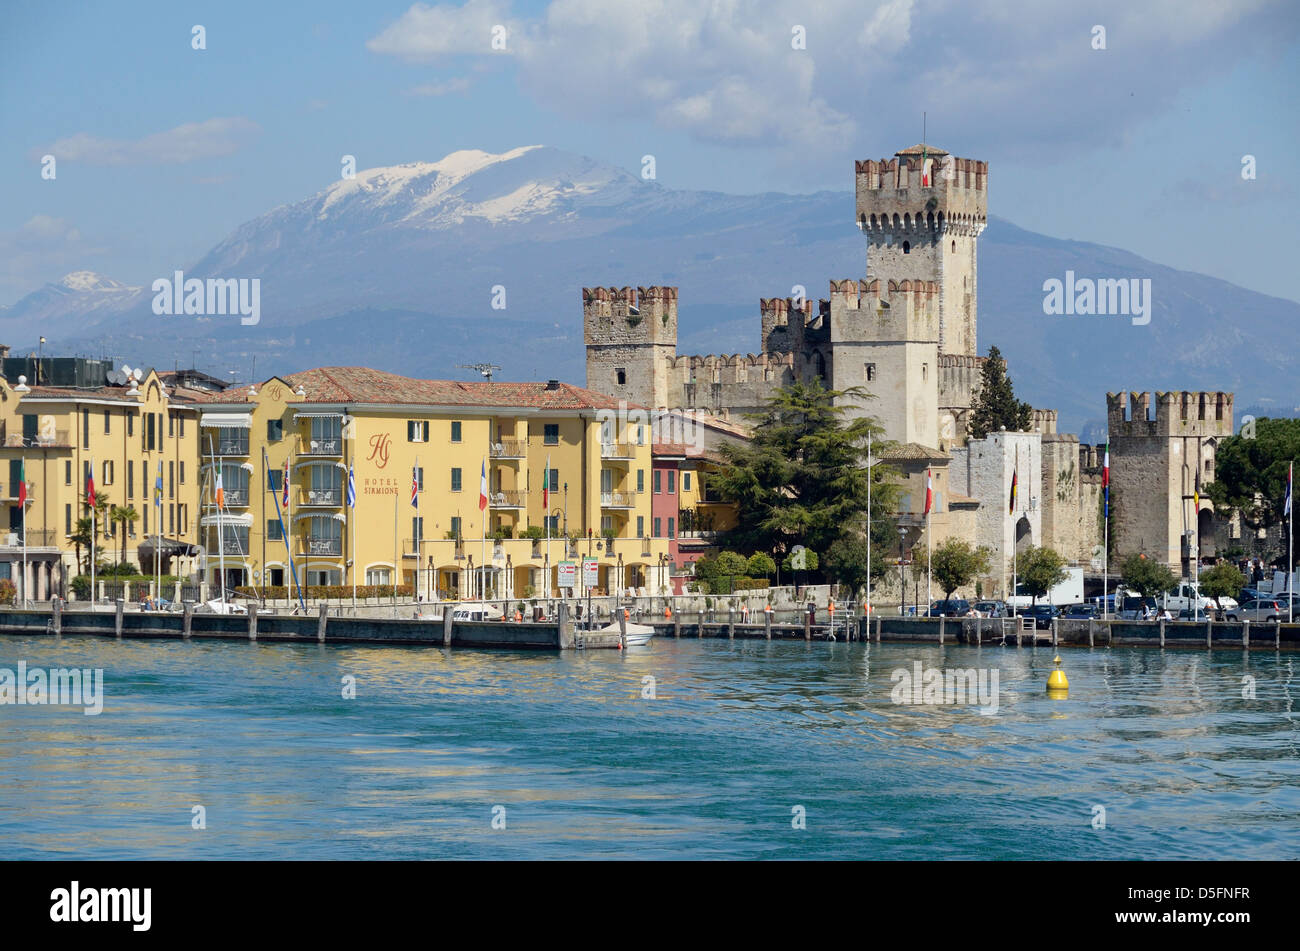 Die Stadt Sirmione am Ufer des Lago de Garda, Italien Stockfoto